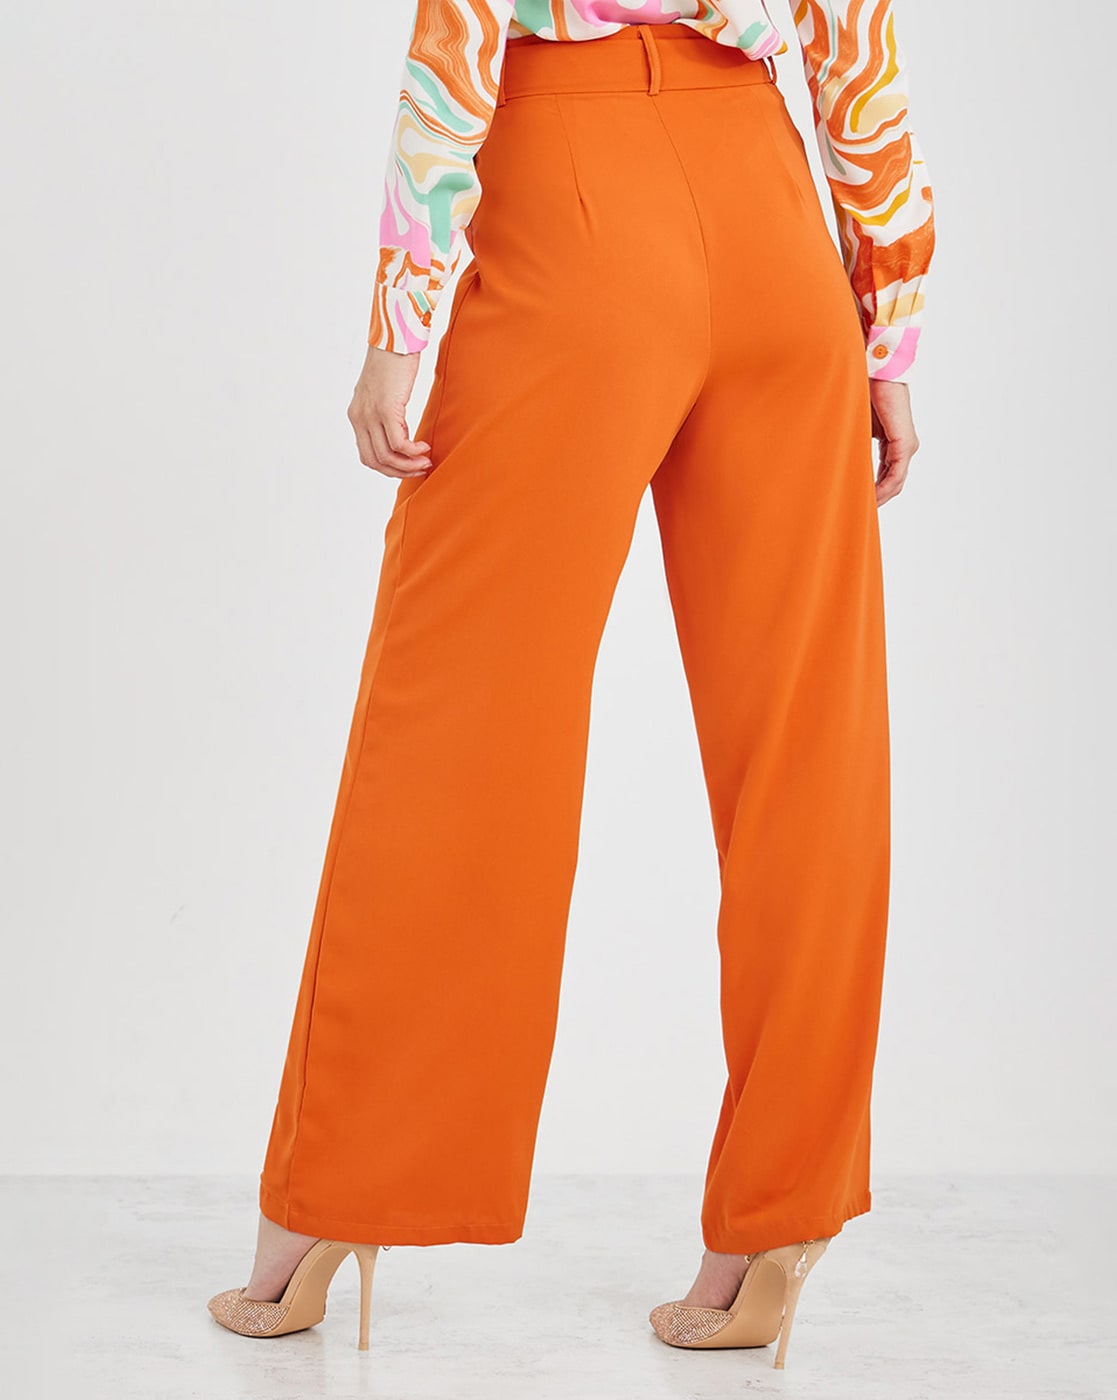 Buy Orange Trousers  Pants for Women by Styli Online  Ajiocom